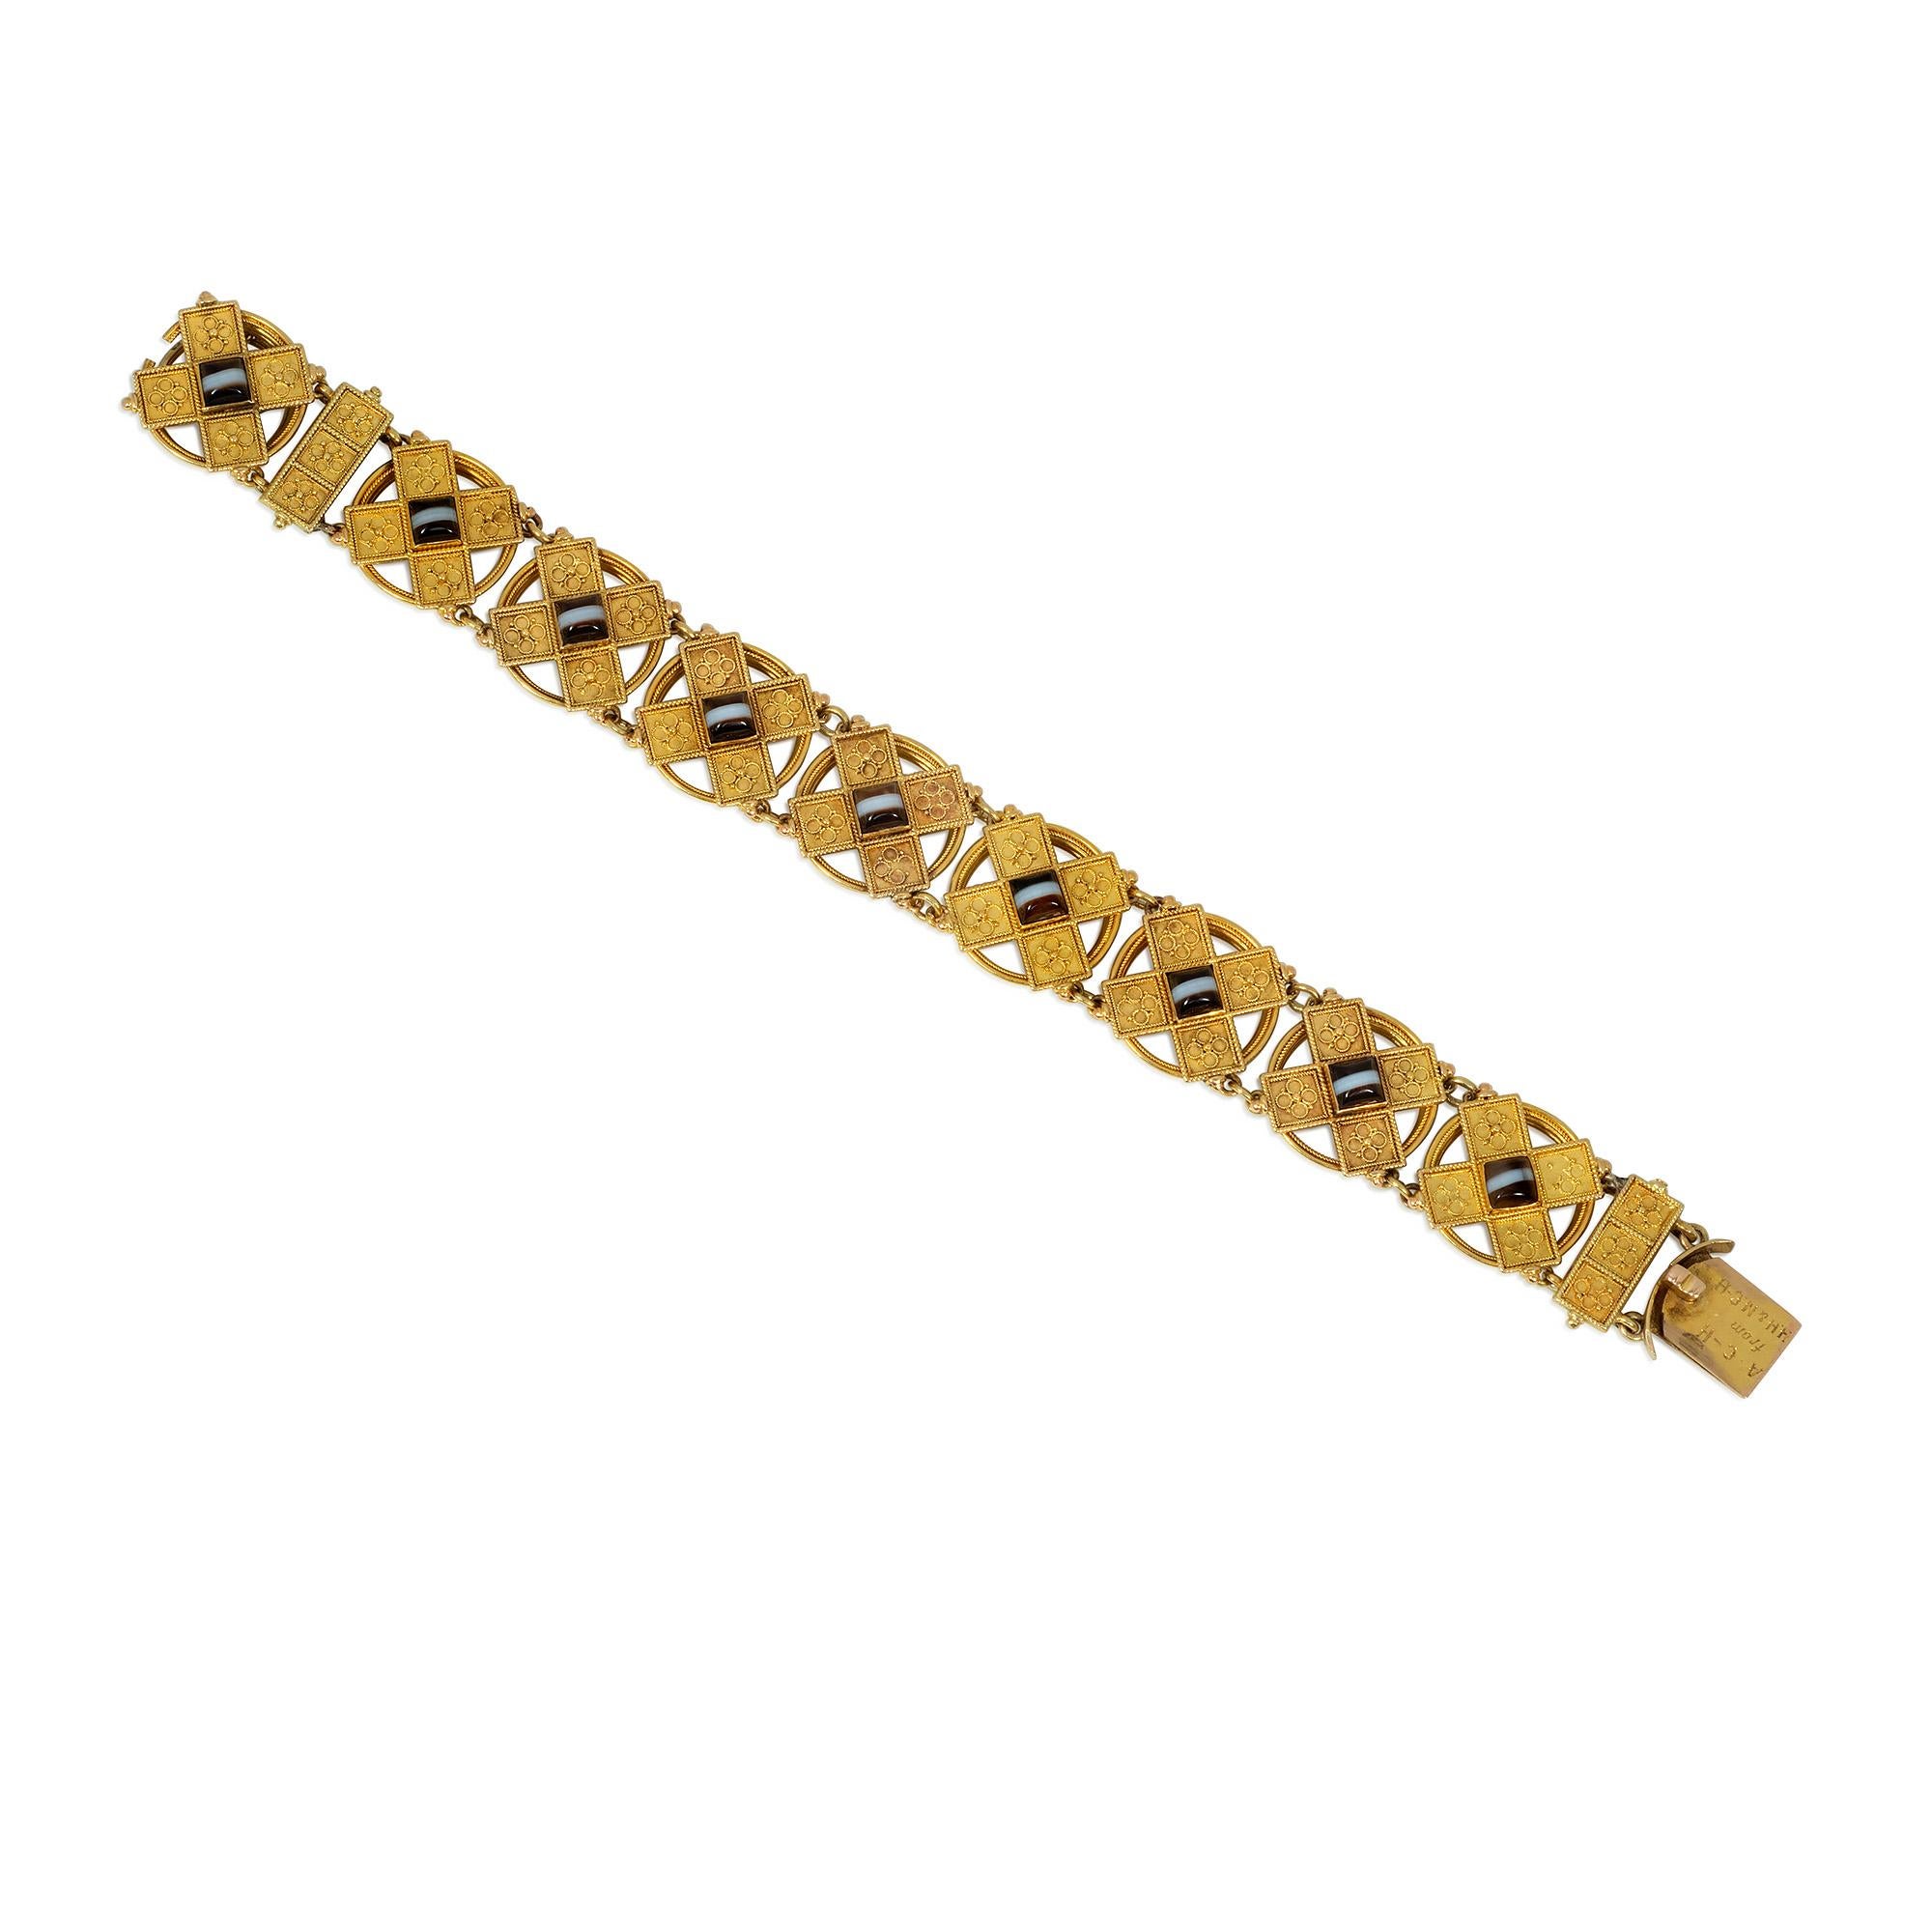 Ein antikes Gold- und Achatarmband aus der viktorianischen Zeit im Stil der etruskischen Wiedergeburt, bestehend aus offenen kreisförmigen Gliedern mit X-förmigen Plaketten, die mit Drahtgeflecht und Granulation verziert sind, wobei jede Plakette in